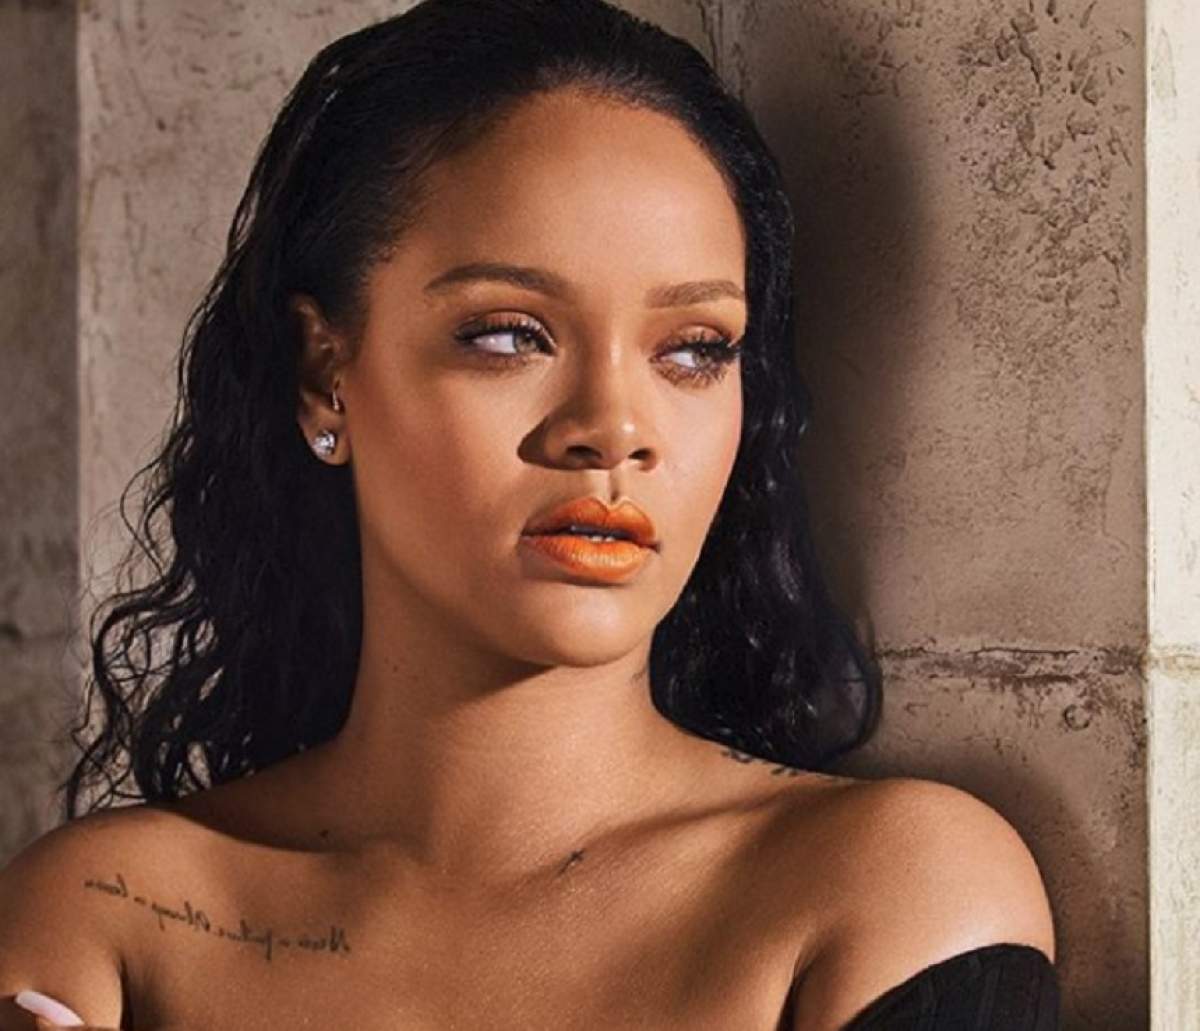 S-au dus vremurile de bombă sexy! Rihanna, aspru criticată de fani că s-a îngrășat: „Ai cam luat proporții”